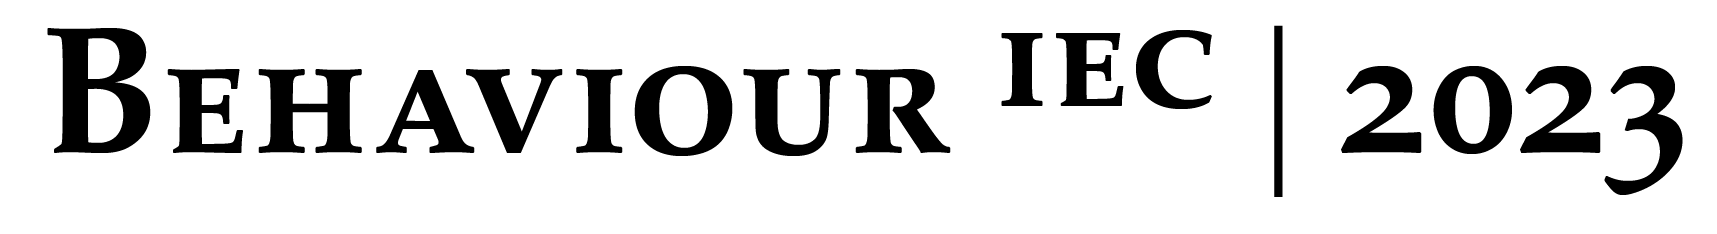 IEC logo for the Behaviour 2023